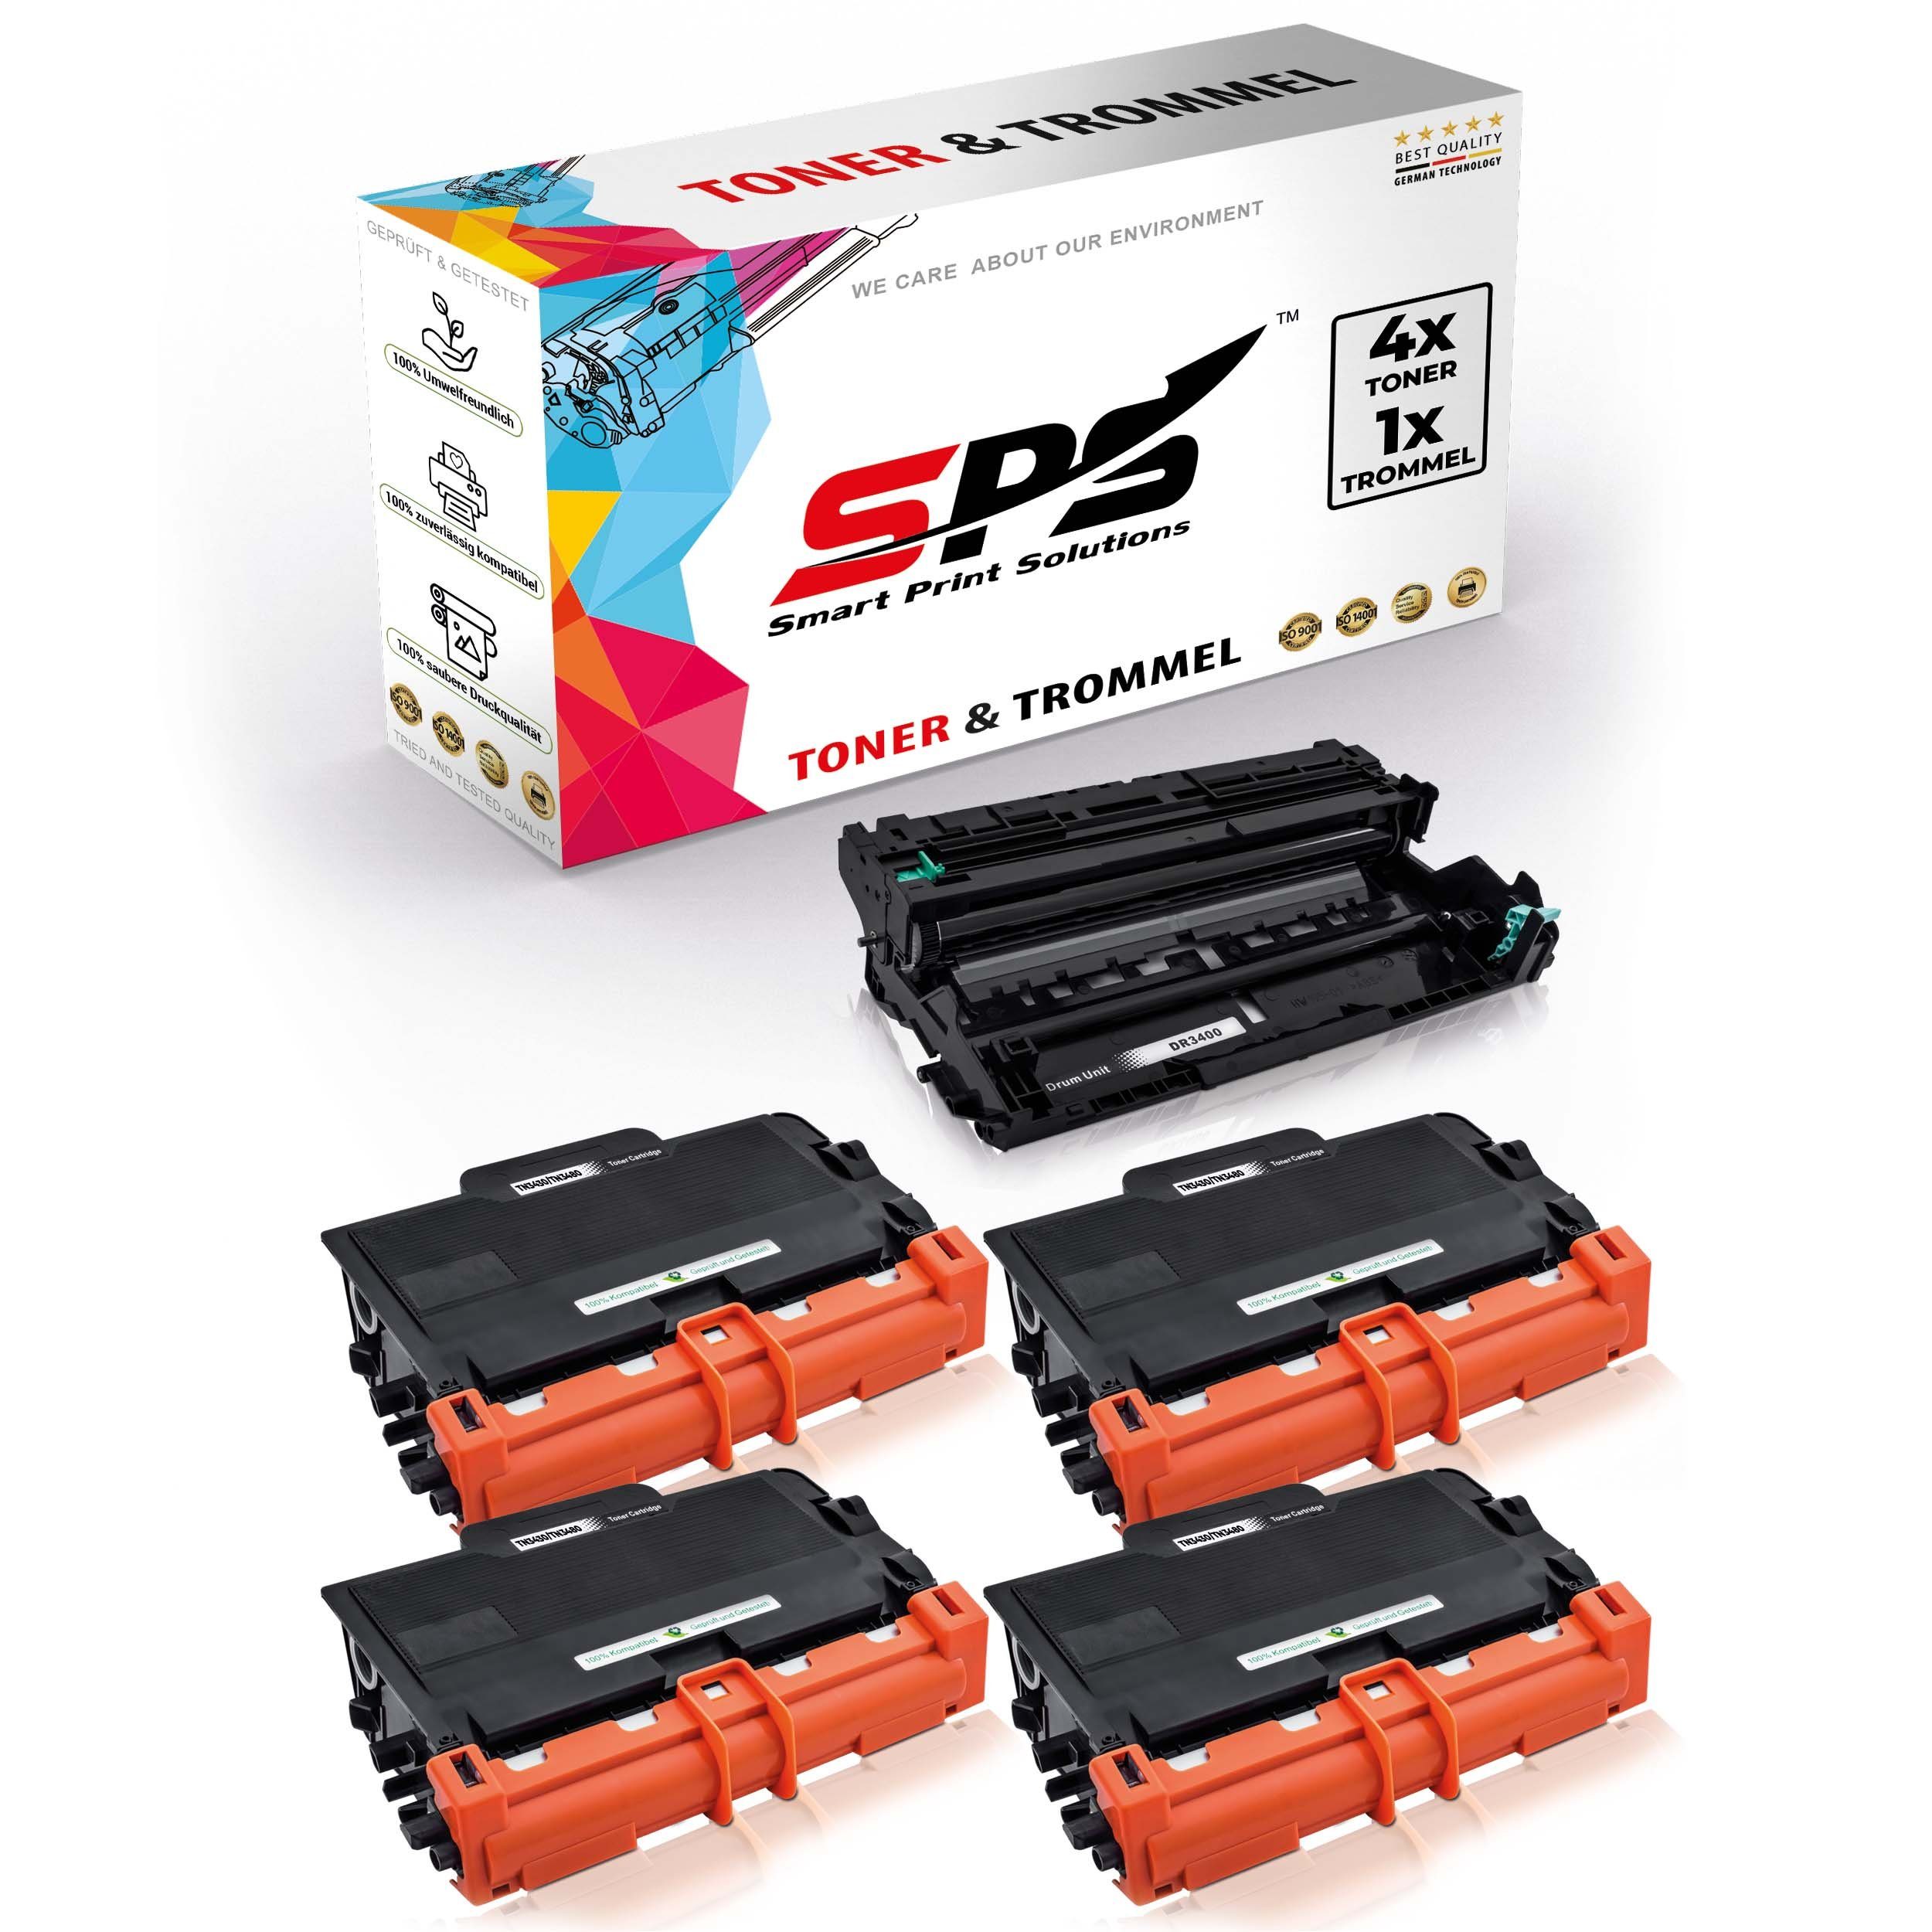 SPS Tonerkartusche Kompatibel für Brother HL-L6300DW DR-3400 TN-3430, (5er Pack)